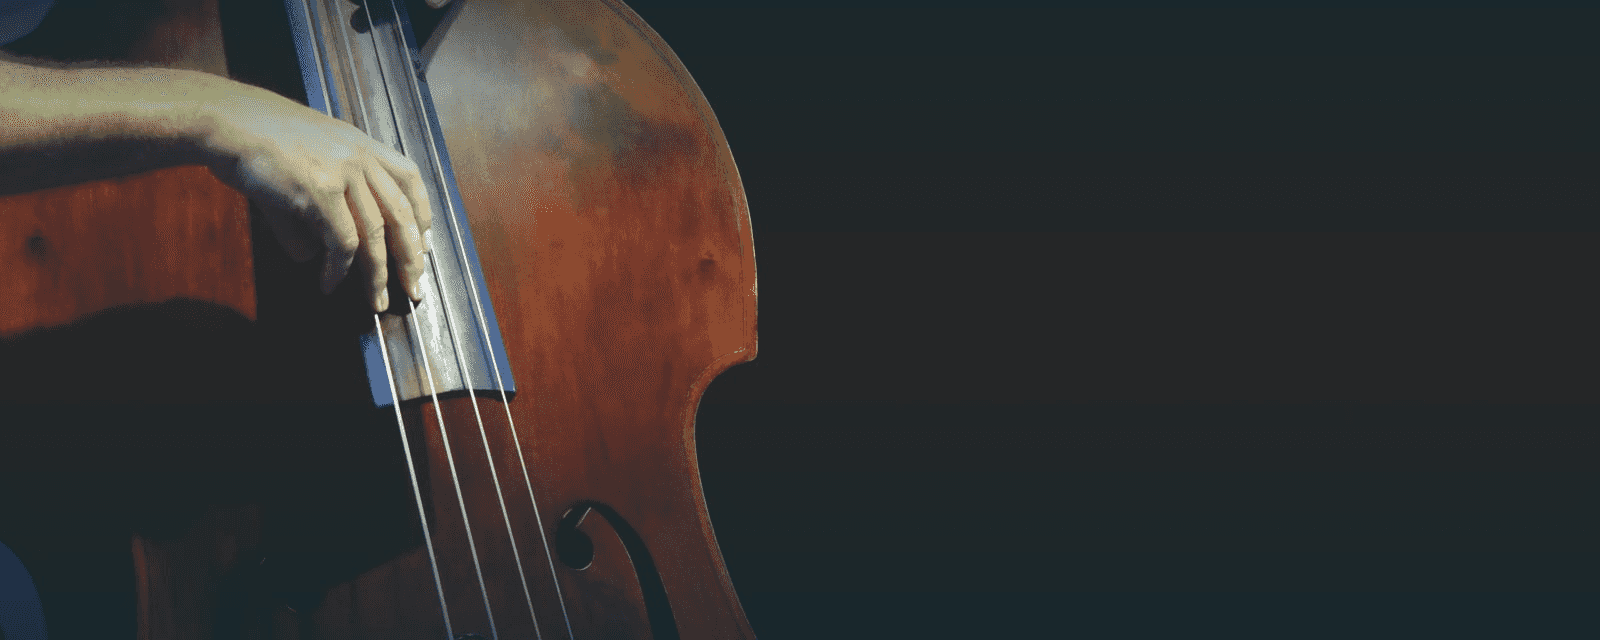 Cello lesson